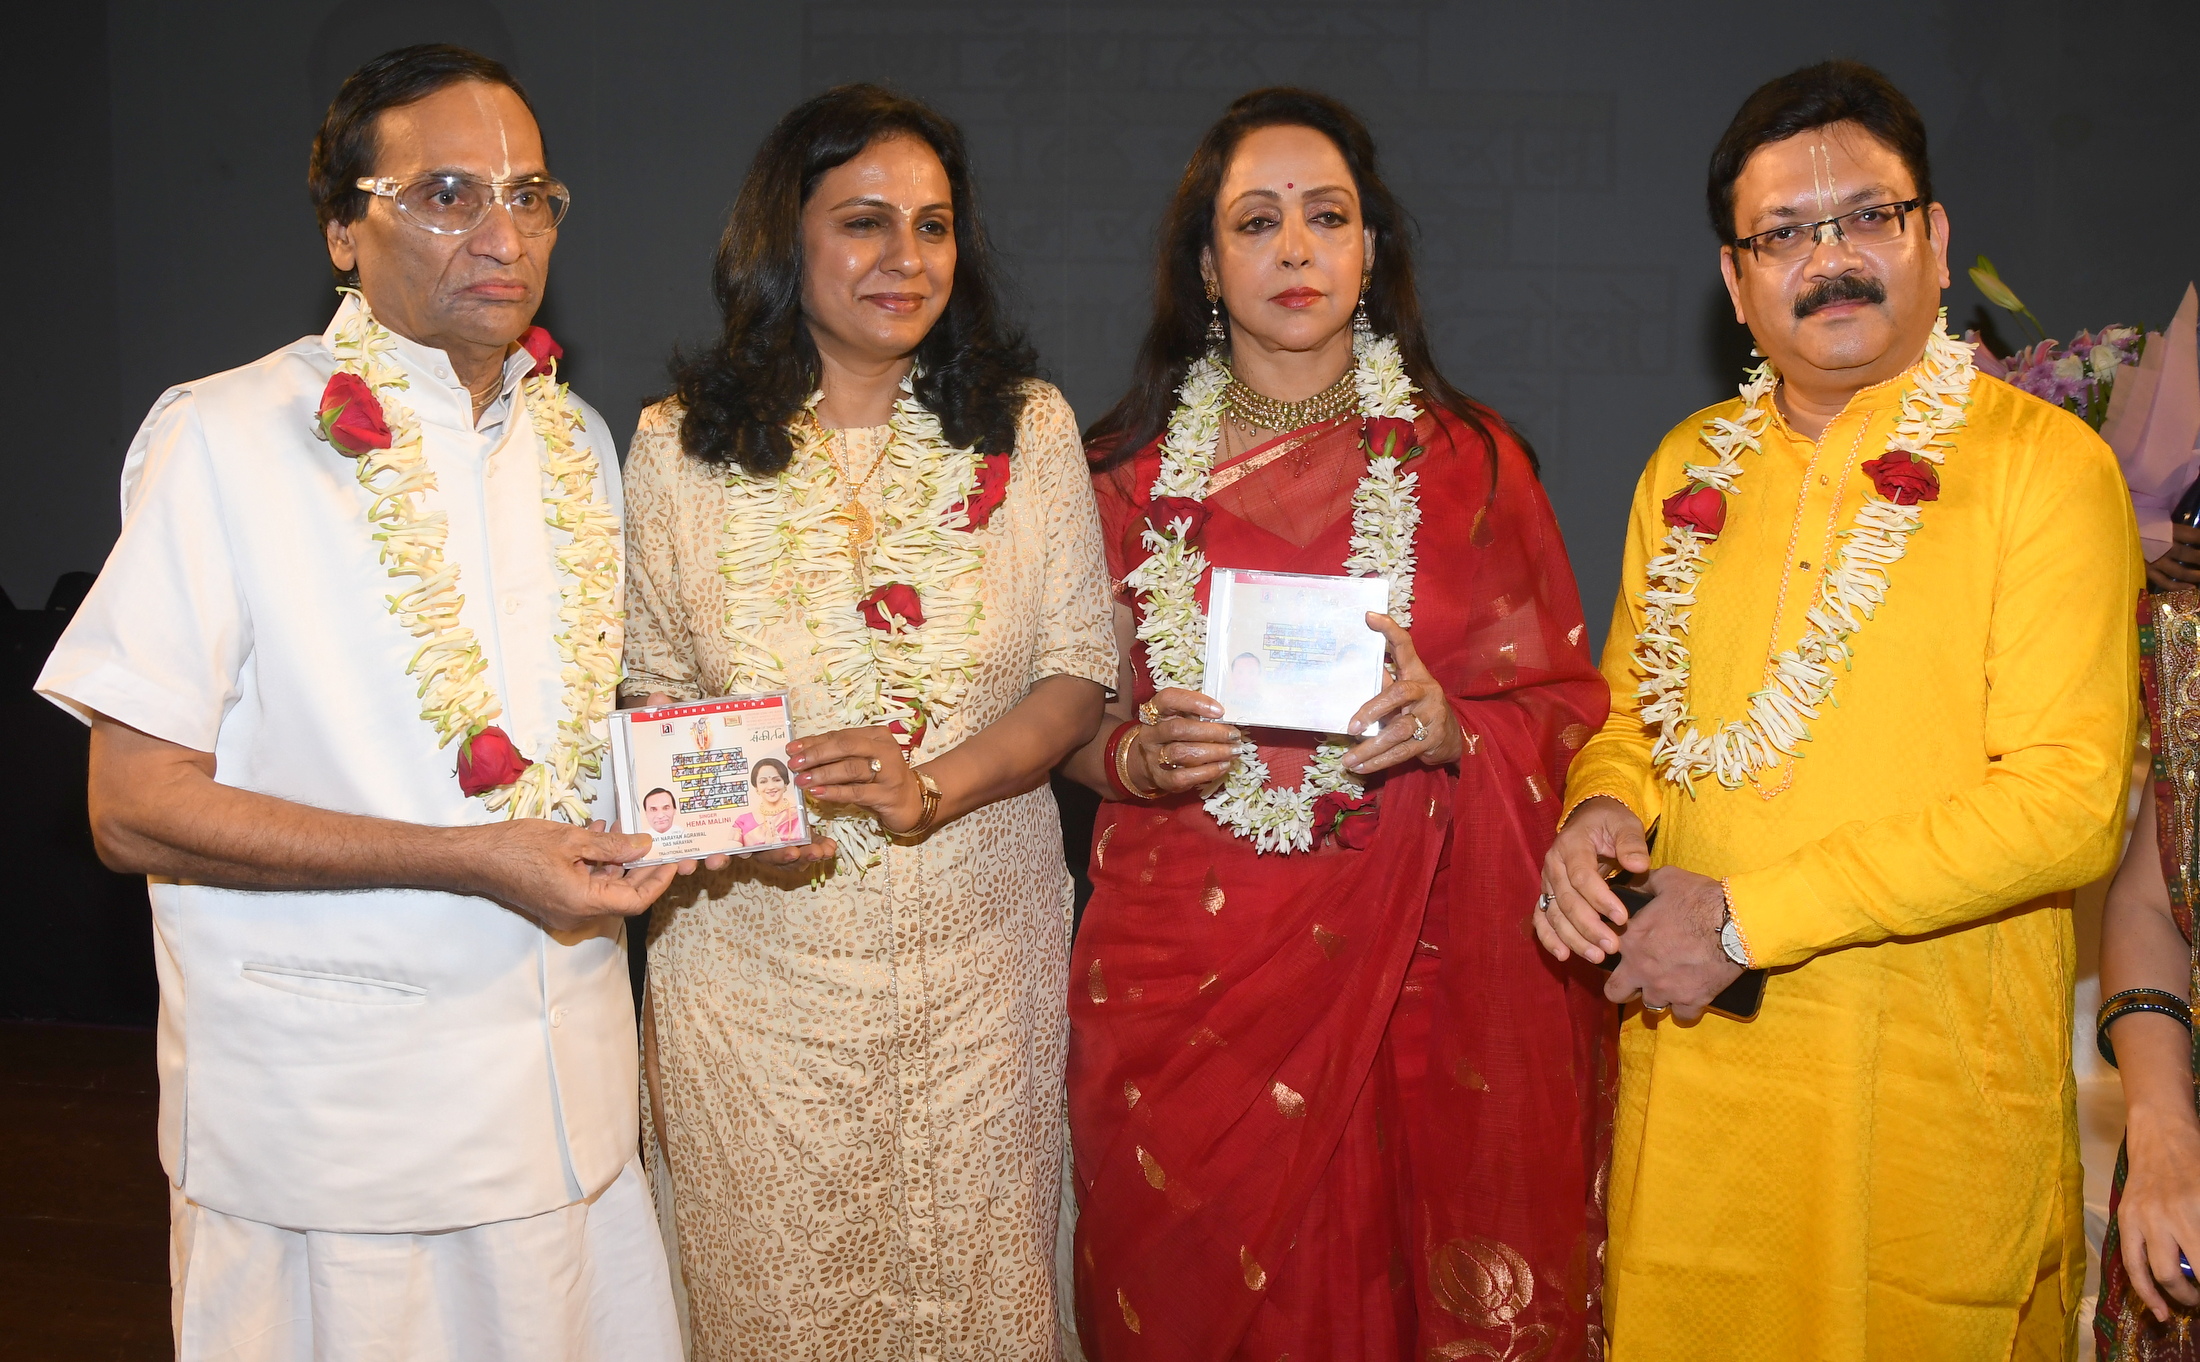 Narayan Agarwal, Gauri Yadwadkar, Hema Malini, and Kalanidhi Vivek Prakash during the album launch - Photo By Sachin Murdeshwar GPN 